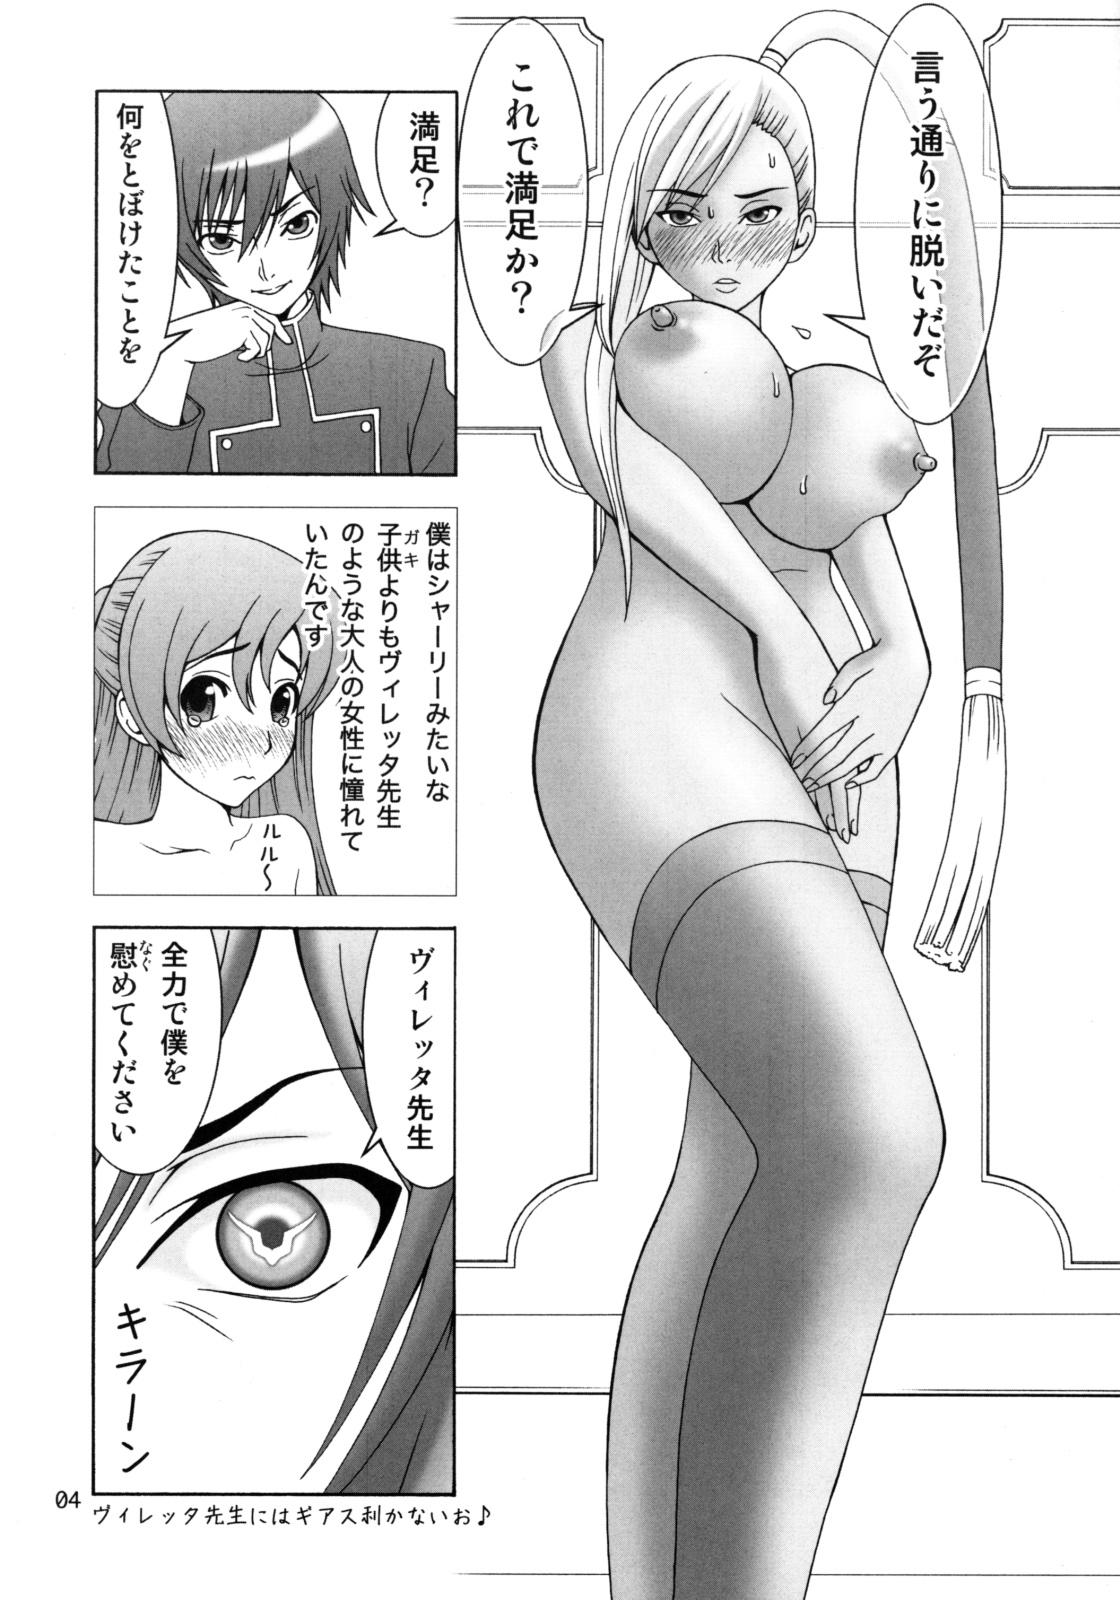 Titties Villetta-sensei ga Ushiro kara Mae kara Yarareteru! - Code geass Body Massage - Page 3